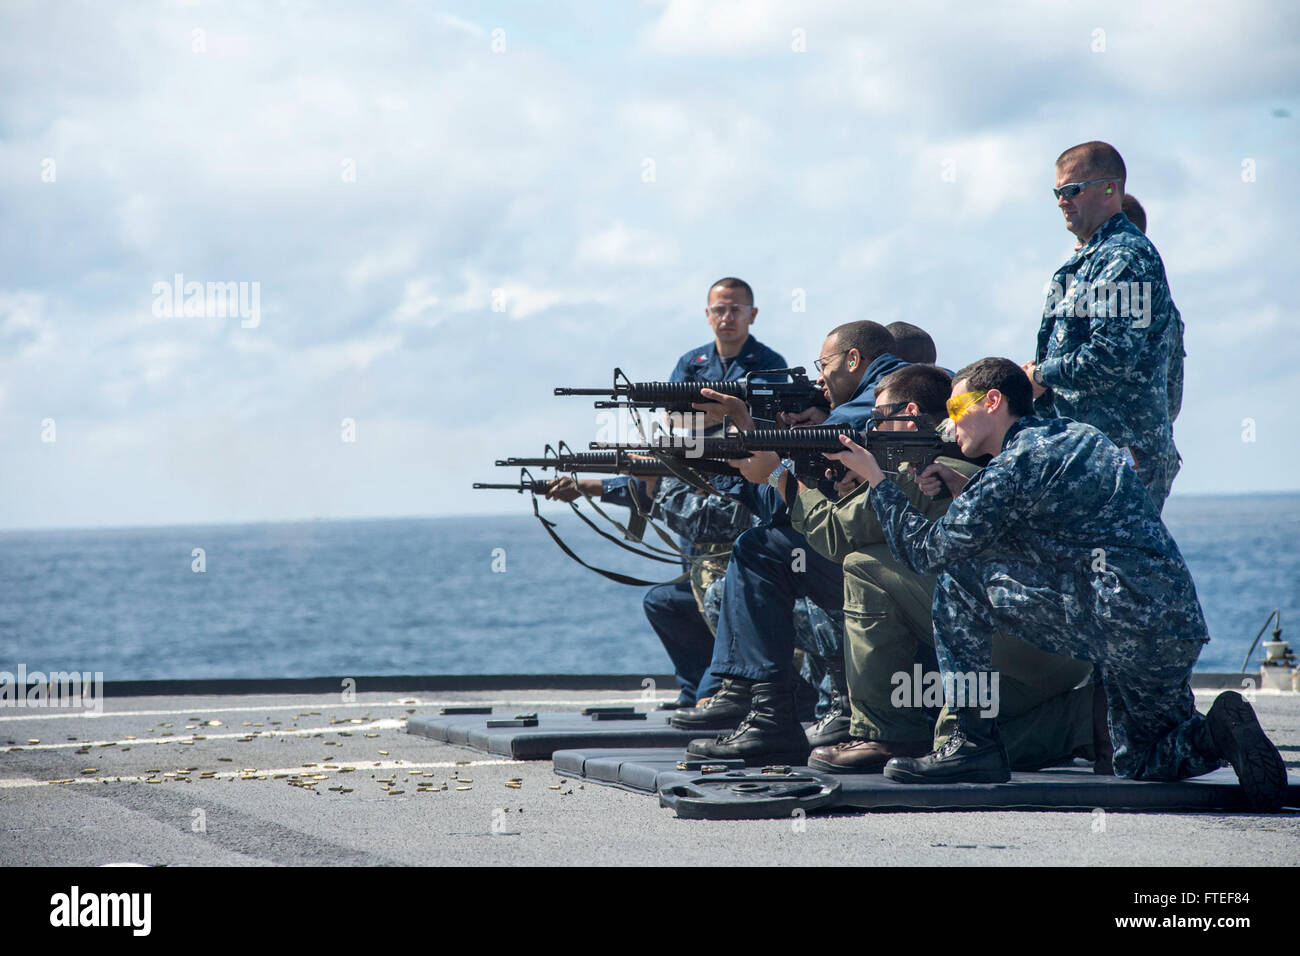 140629-N-EZ054-117-Nordsee (29. Juni 2014) - Teilnahme das M16 Gewehr Qualifikation Shooting auf Mount Whitney Flugdeck Segler, der 6. Flotte Kommando- und Schiff USS Mount Whitney (LCC20) zugewiesen. Mount Whitney, Gridley in Gaeta, Italien, ist den USA 6. Flotte Flaggschiff und arbeitet mit einer kombinierten Mannschaft von US-Segler und Military Sealift Command (MSC) Zivildienst Seeleute. (Foto: U.S. Navy Mass Communication Specialist 3. Klasse Luis R. Chavez Jr/freigegeben) Stockfoto